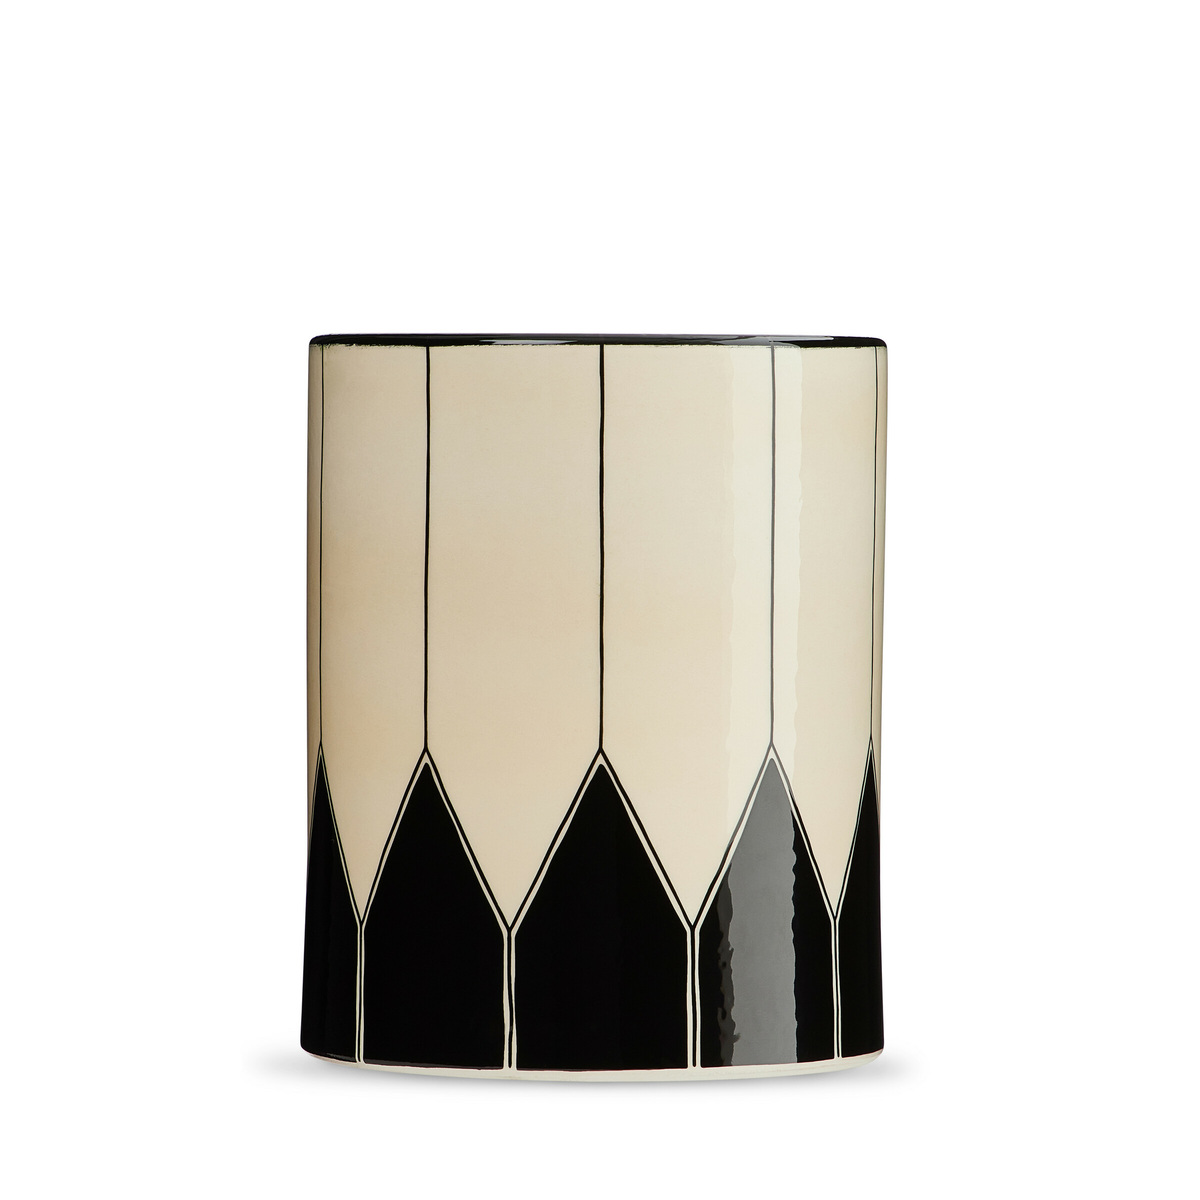 Vase Daria - Moyen modèle, Noir - H19 x ø15,5 cm - Grès - image 1